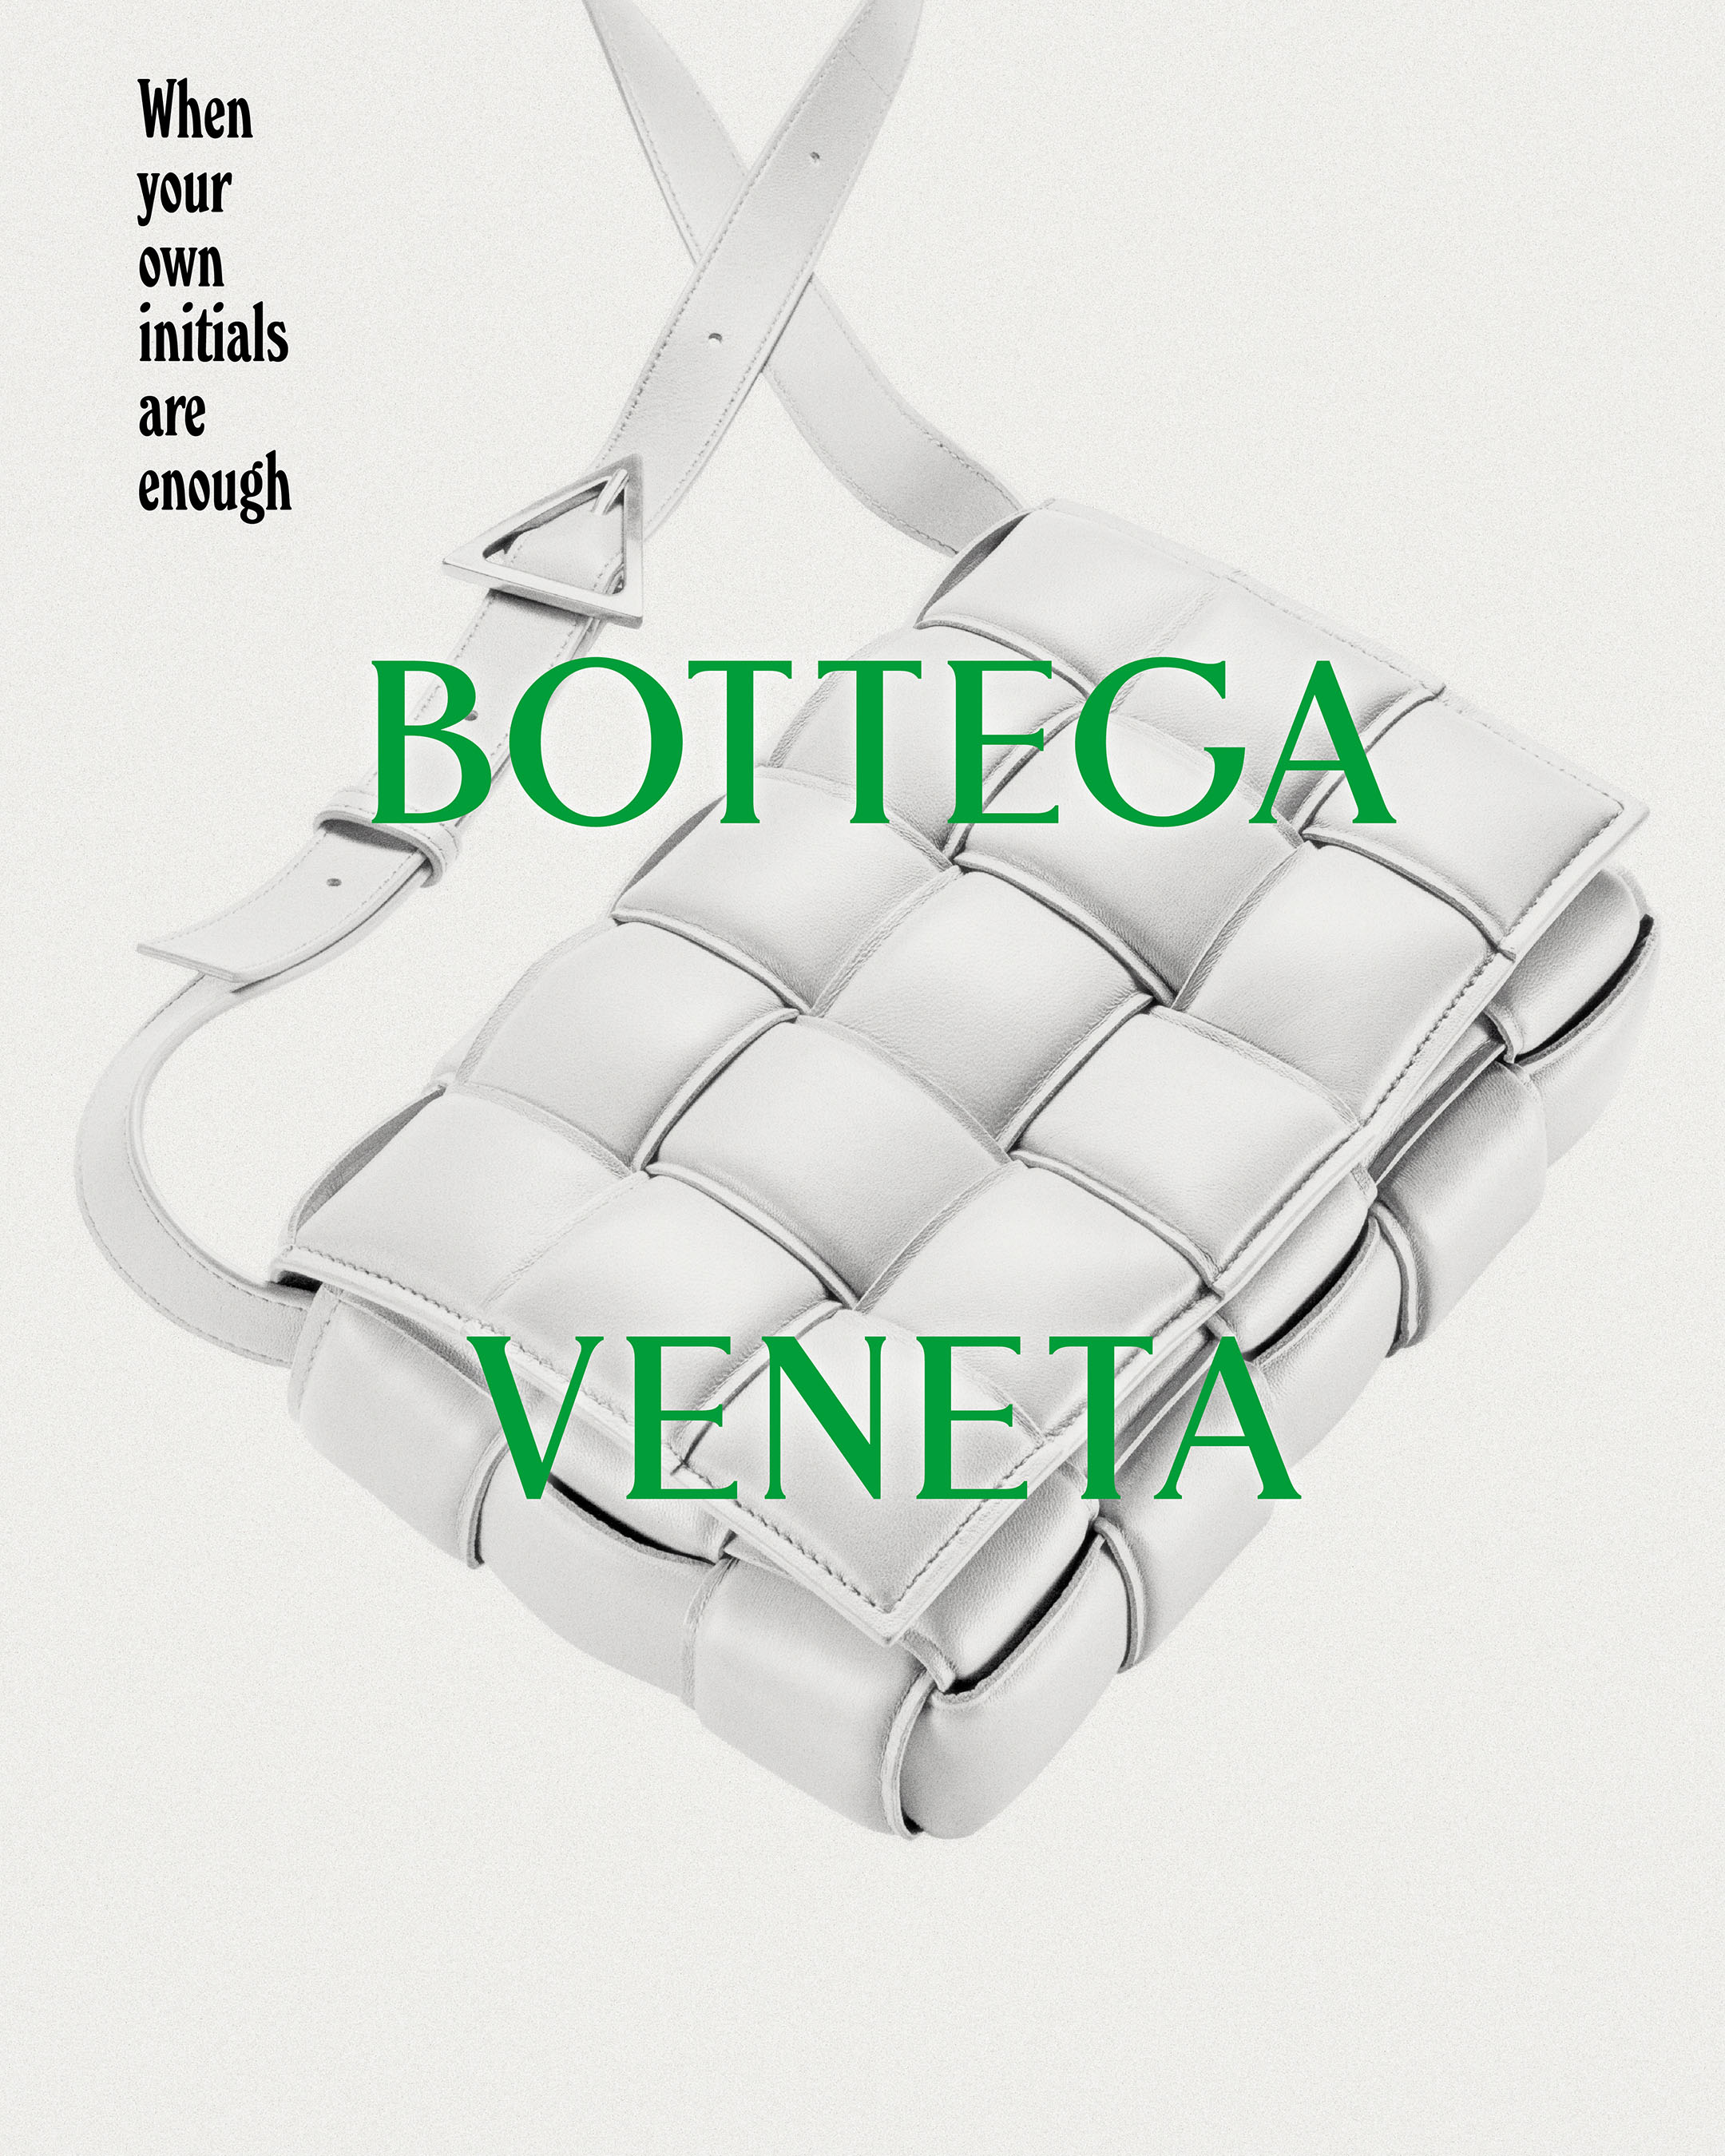 Bottega Veneta's padded cassette bag campaign